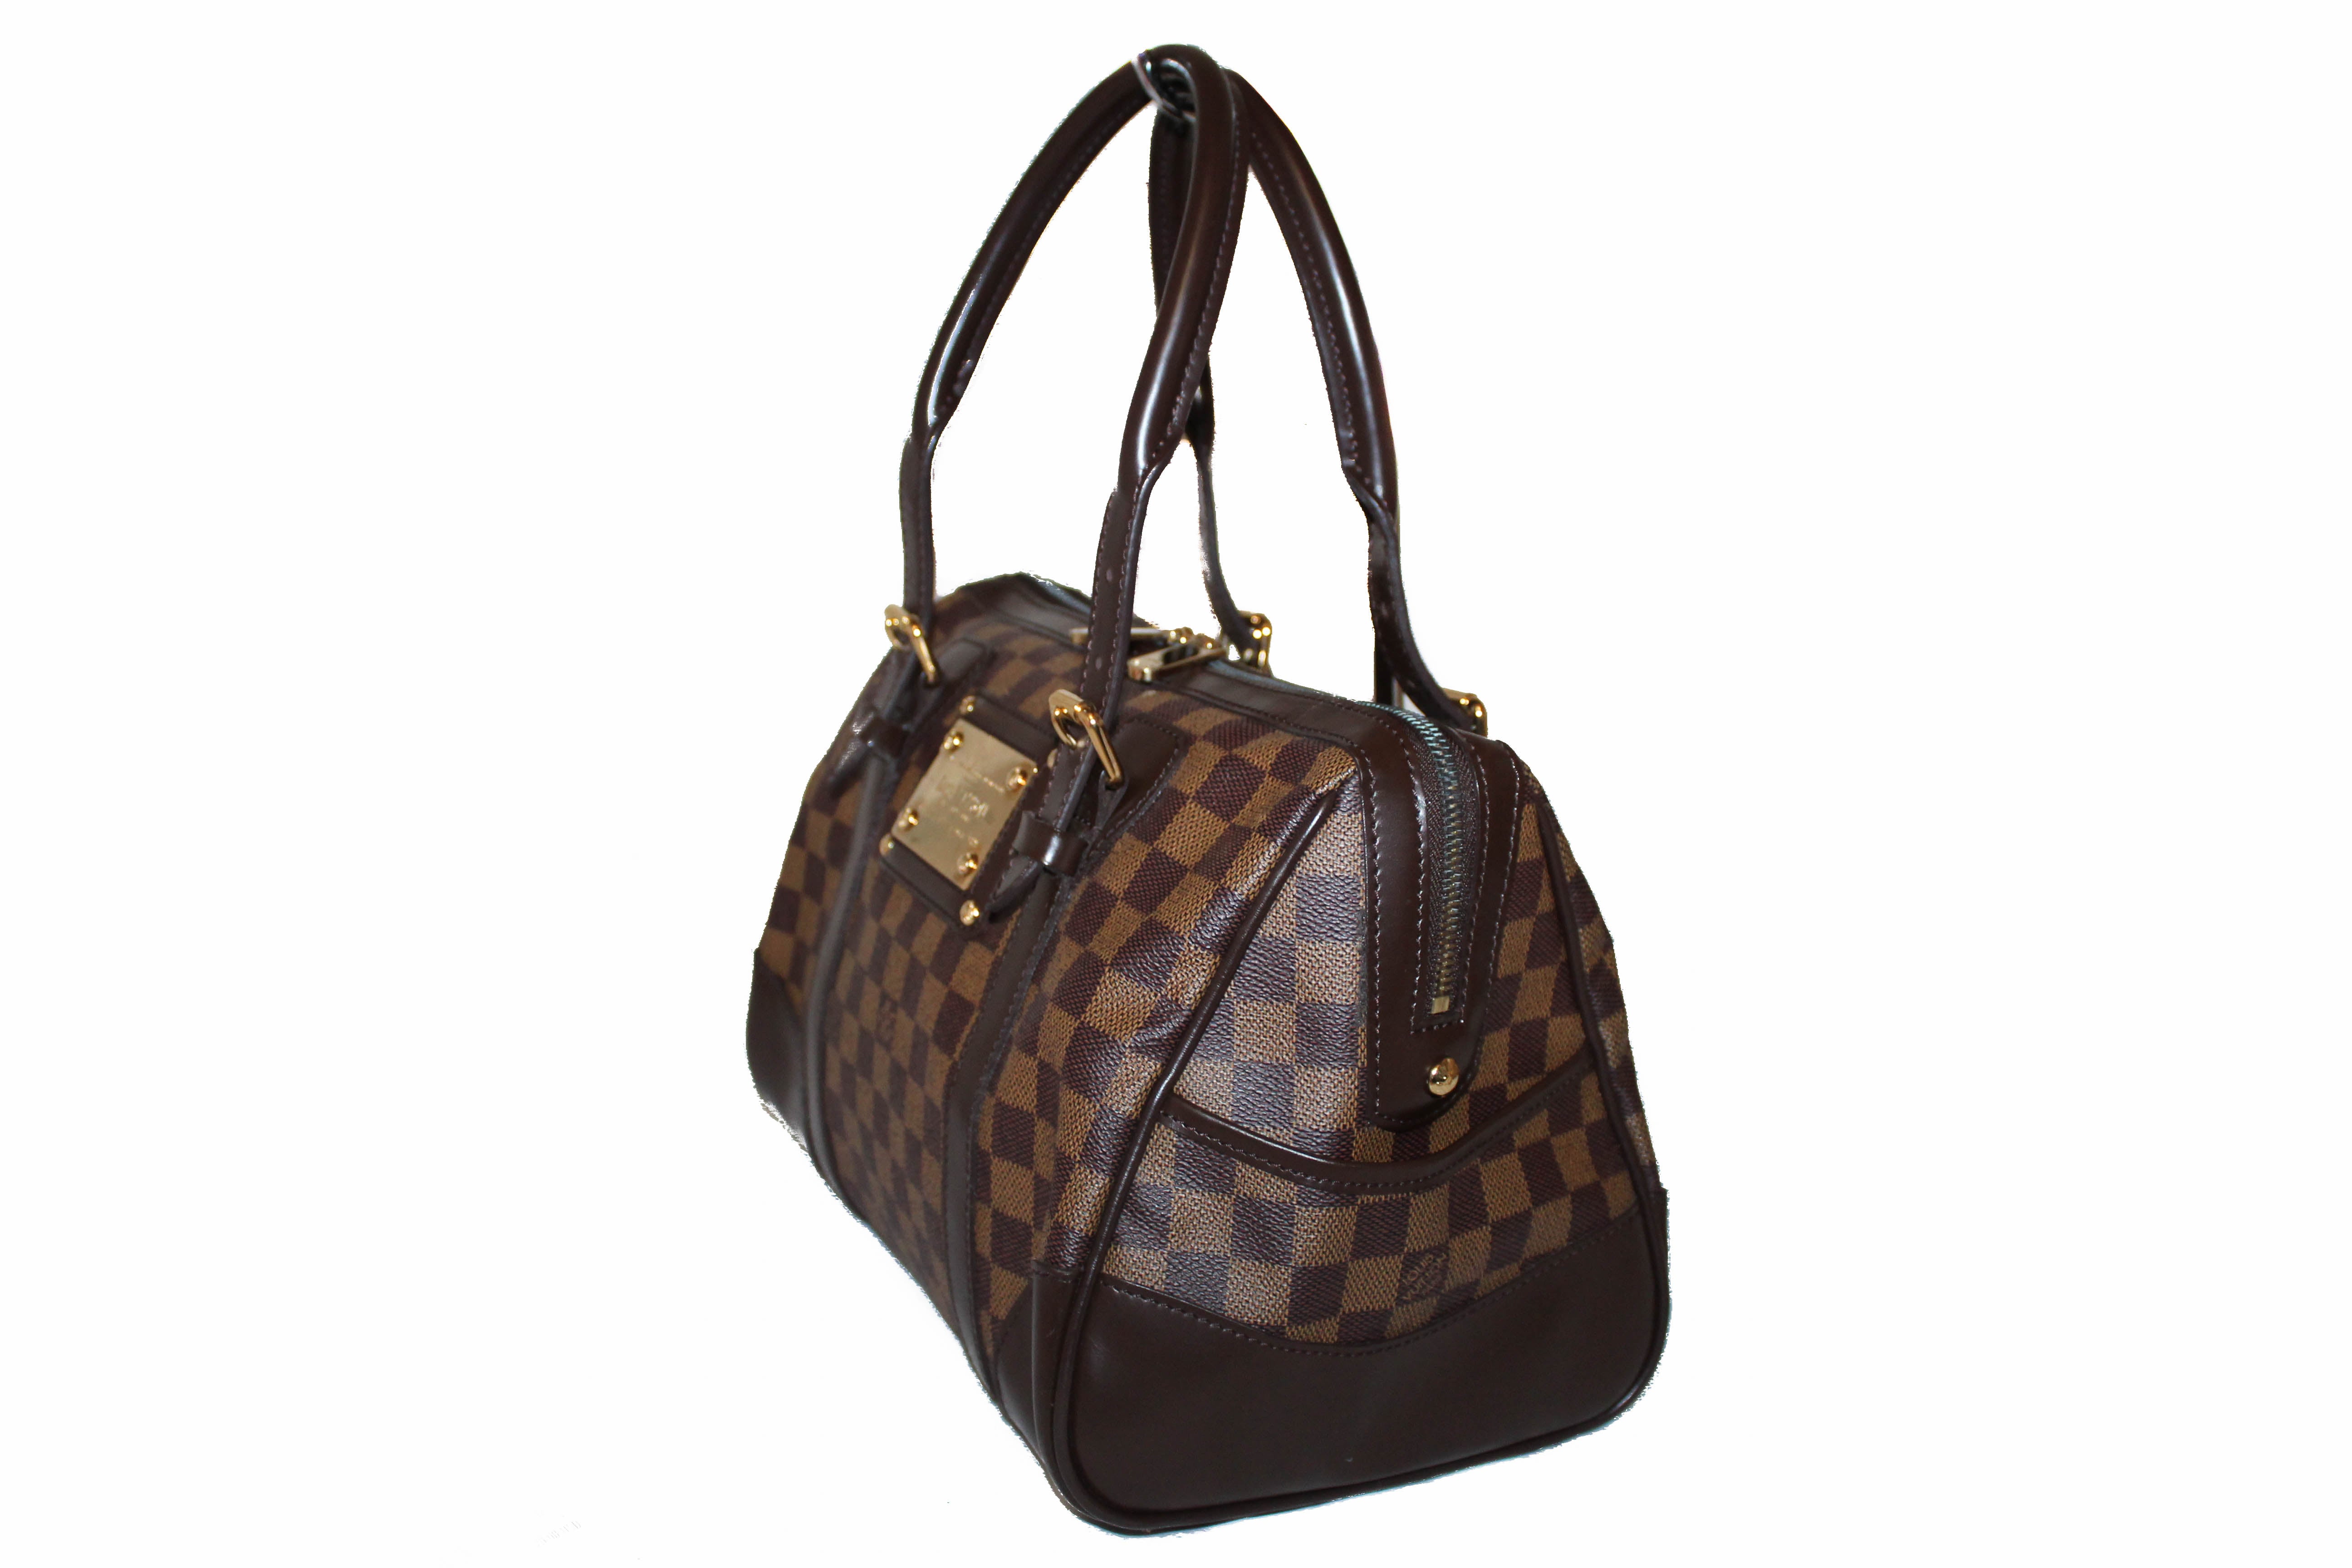 Authentic Louis Vuitton Damier Ebene Berkeley Hand Bag – Paris Station Shop